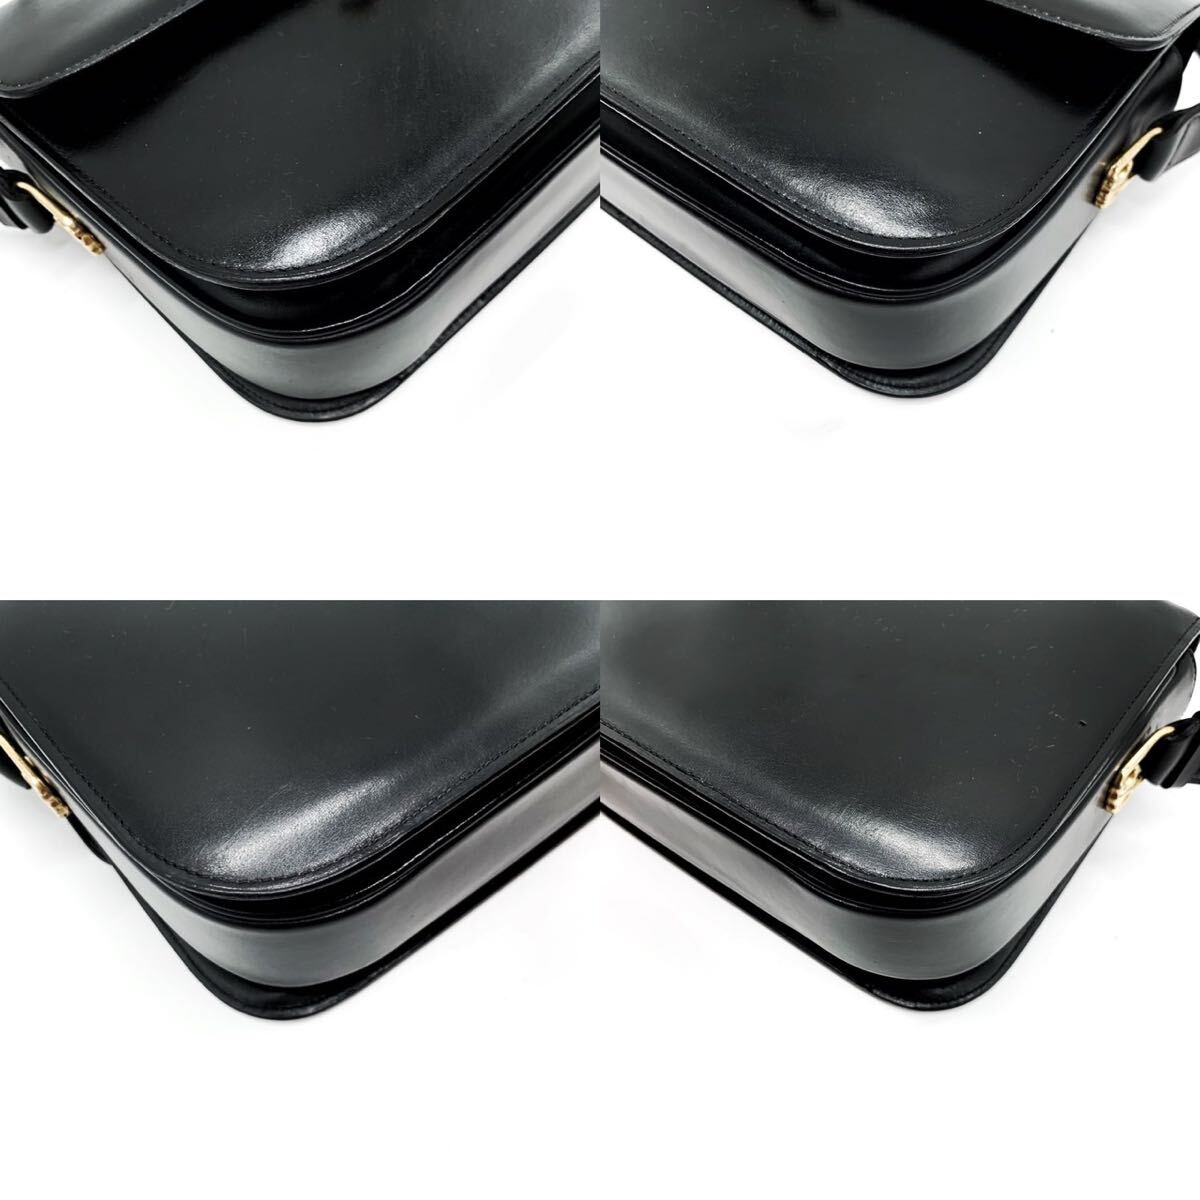 1 иен [ первоклассный ]CELINE Celine сумка на плечо большая сумка Trio mf металлические принадлежности Gold заслонка машина f кожа натуральная кожа черный плечо .. Macadam 